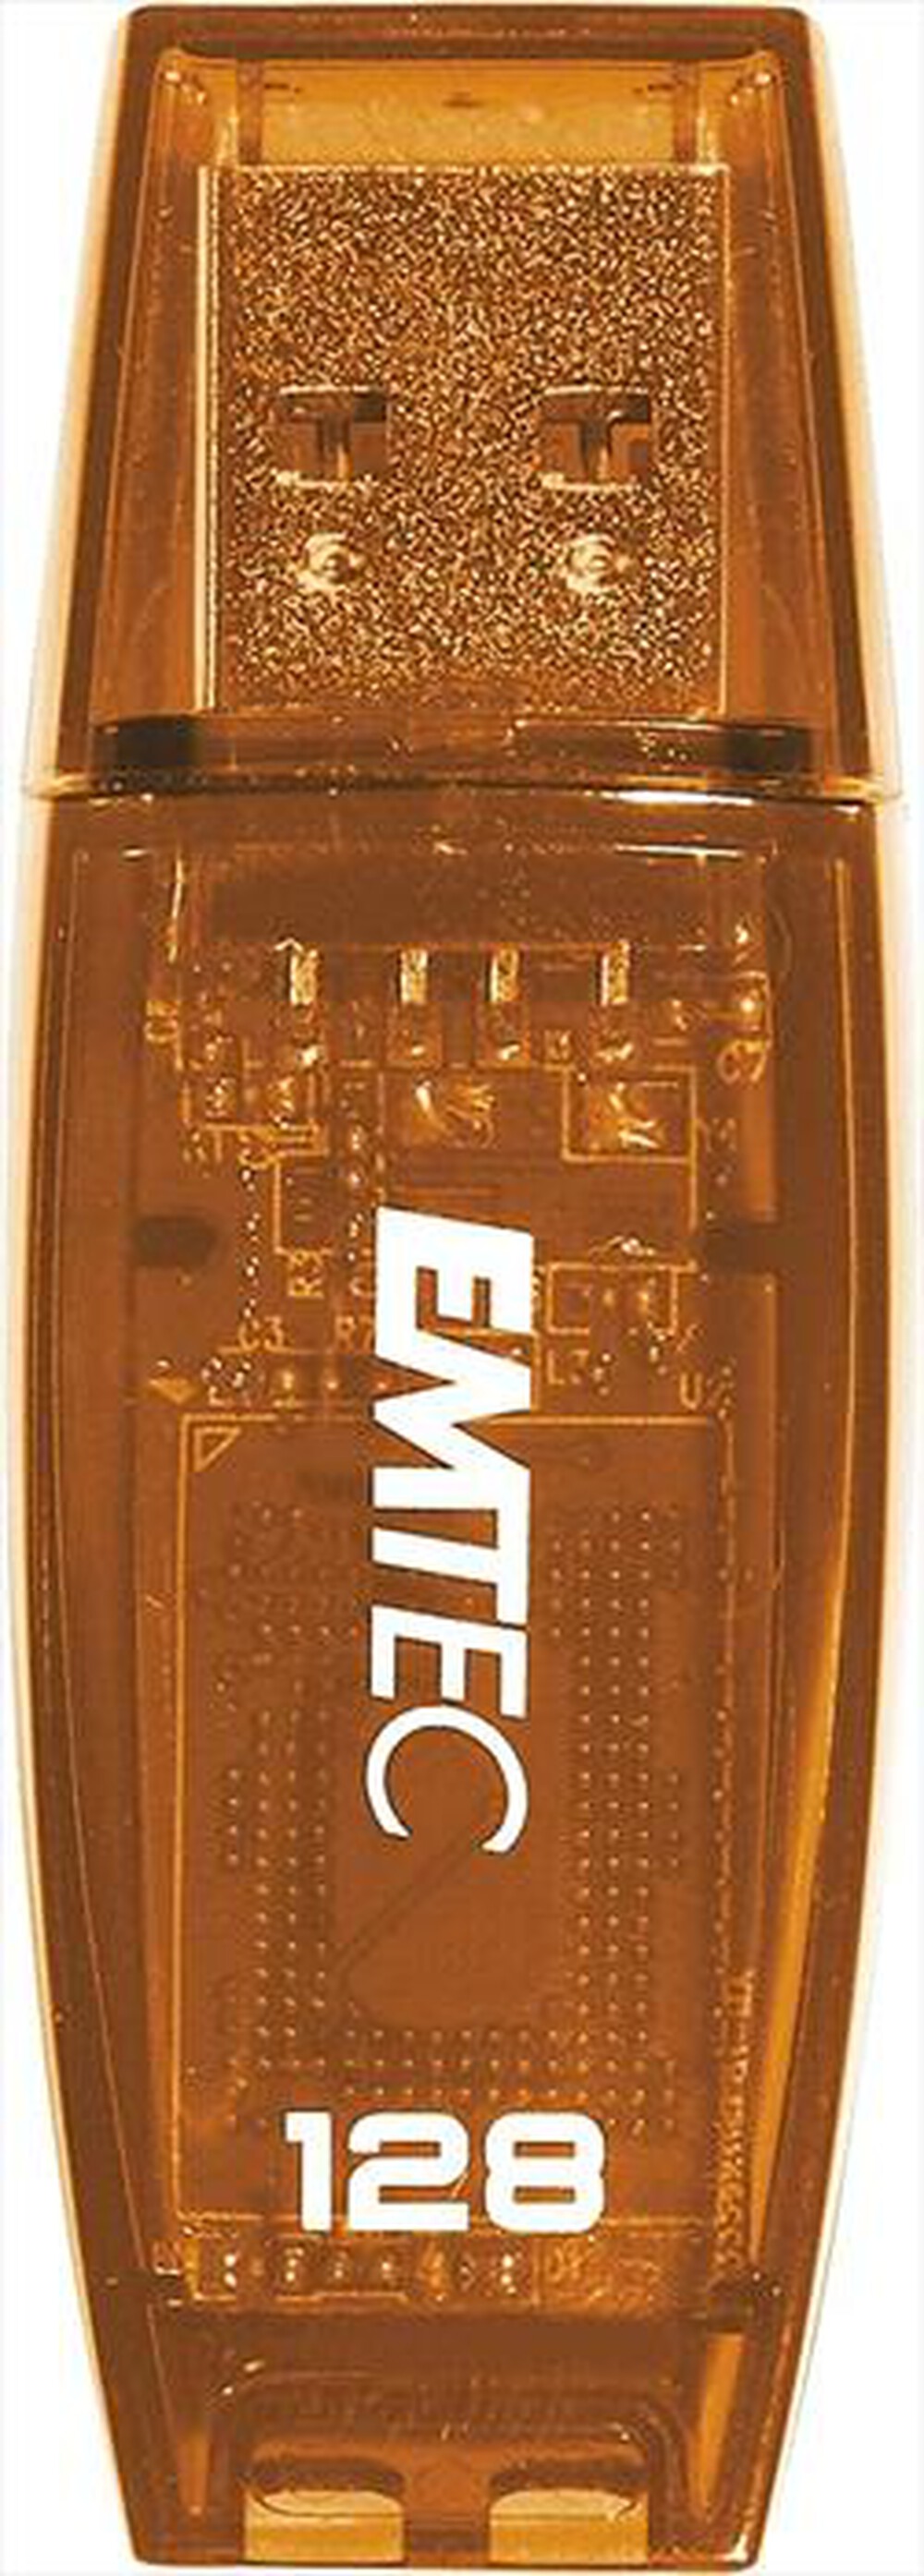 "EMTEC - Memoria USB 128 GB ECMMD128G2C410"